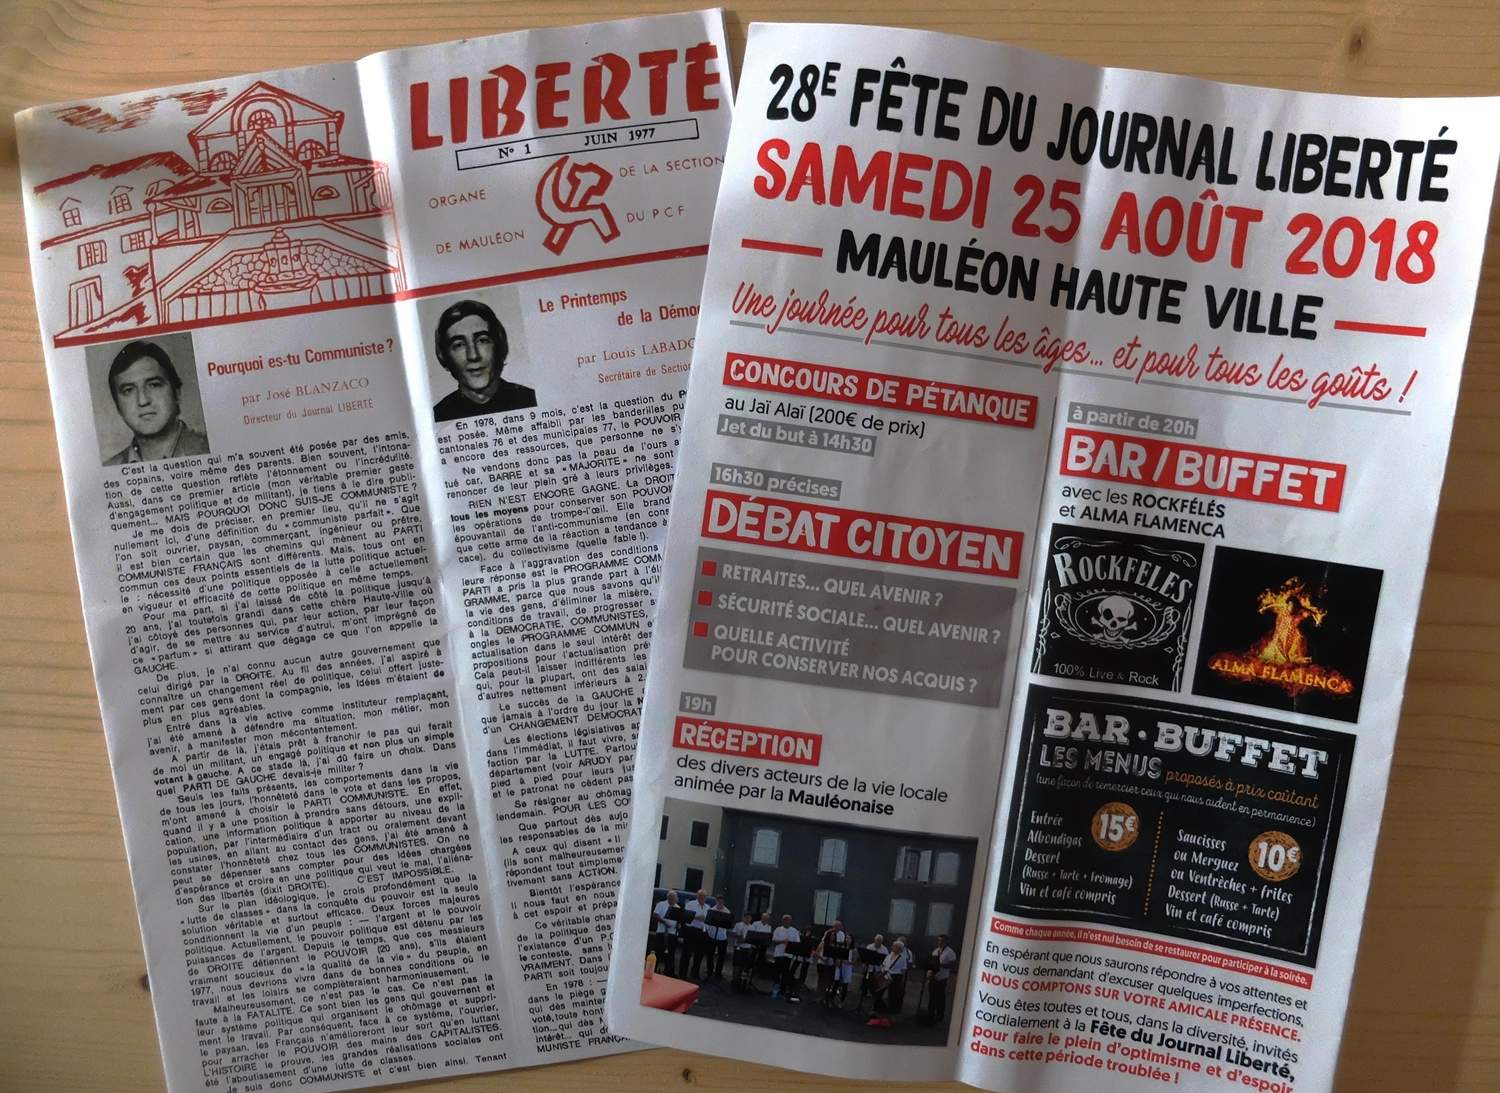 Liberté aldizkariaren 28. besta Maule gainean.